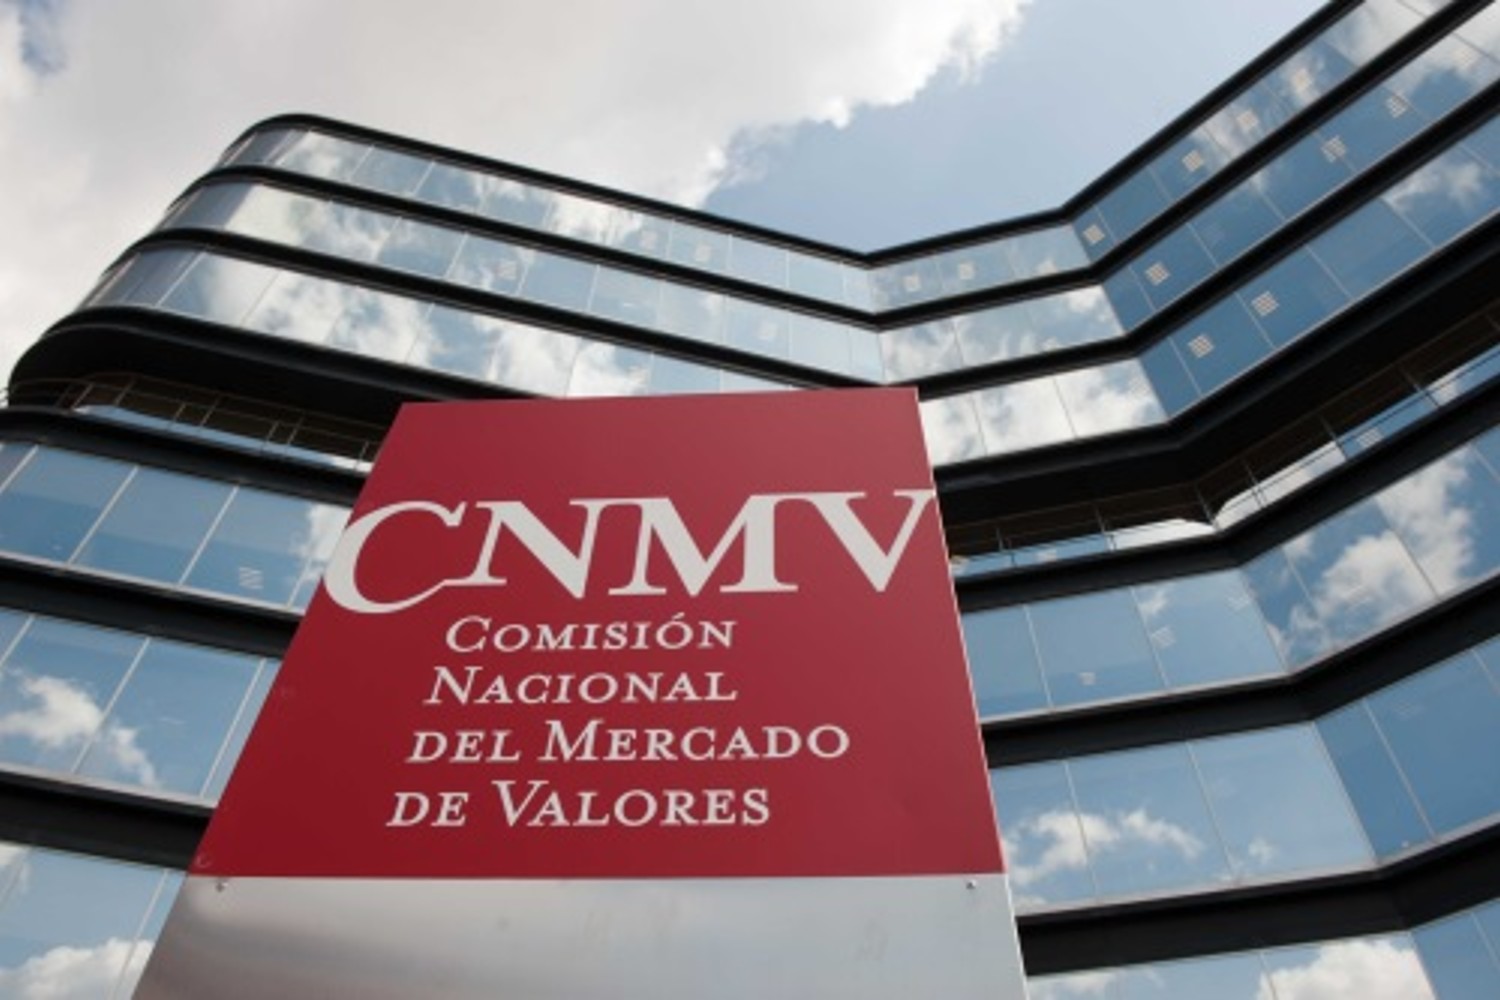 La CNMV ha emitido sus conclusiones tras la revisión de la información facilitada por Grifols. Foto: CNMV.